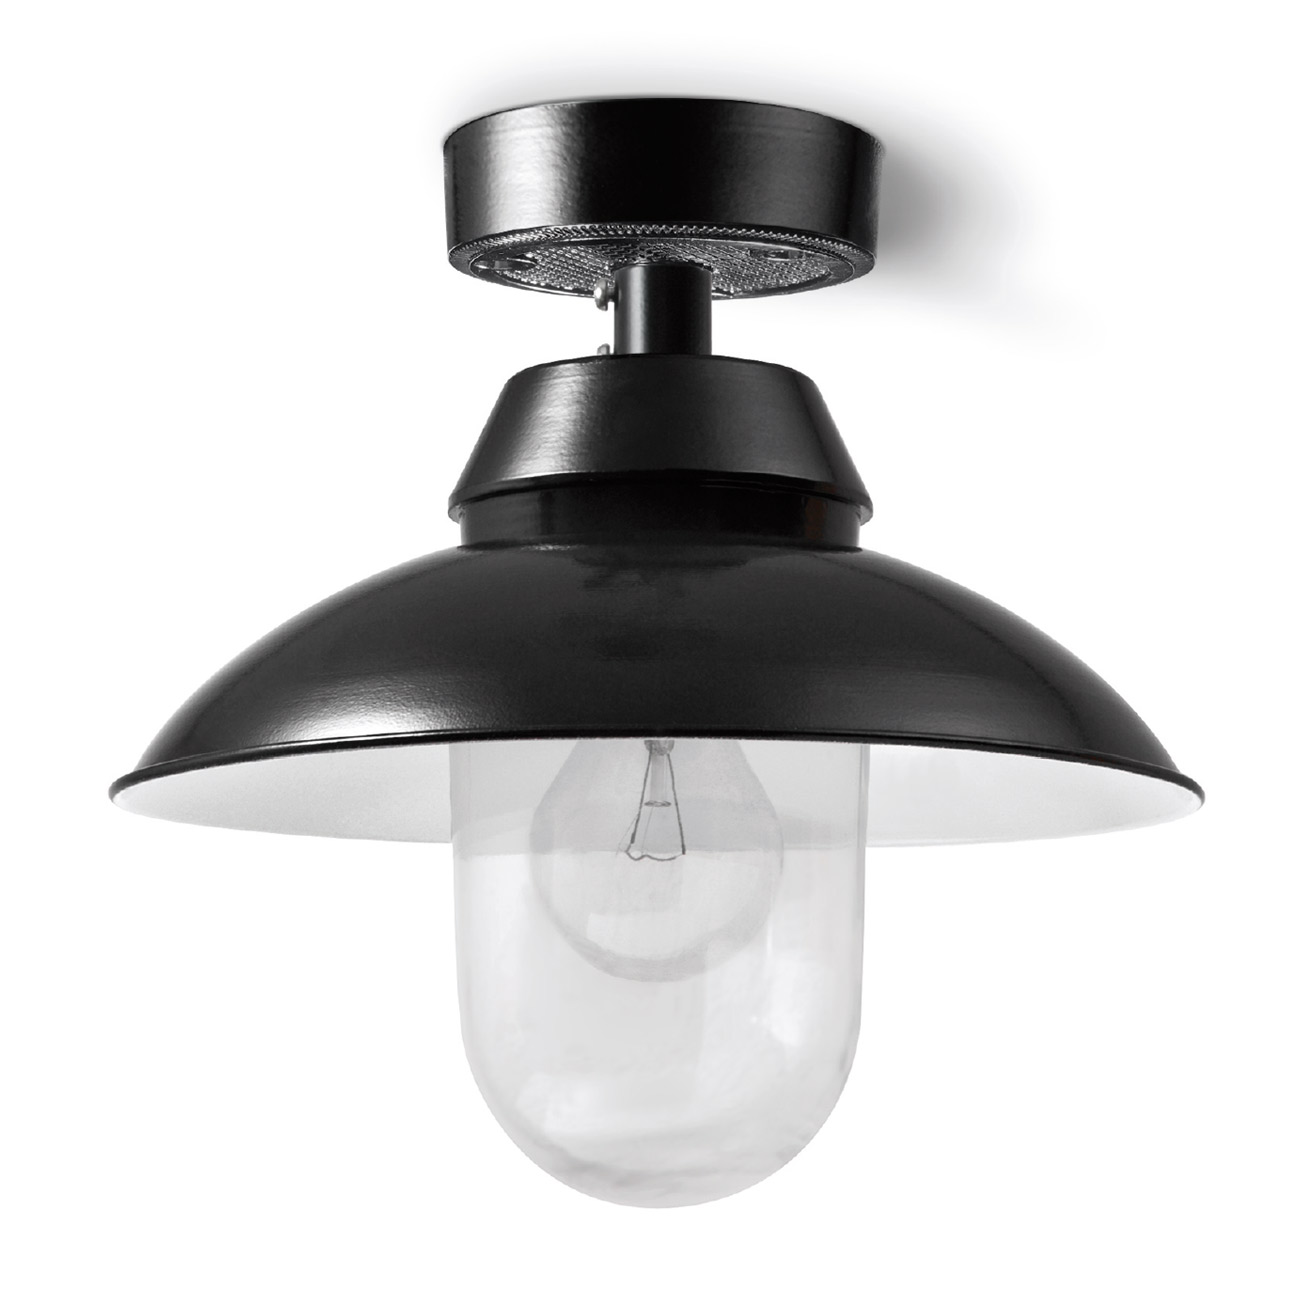 MAINZ ZYLINDER Deckenlampe mit Schraubglas und Schirm Ø 26 cm: Abgebildet in schwarz mit kleinem 26 cm-Schirm und klarem Zylinder-Glas Ø 100 mm